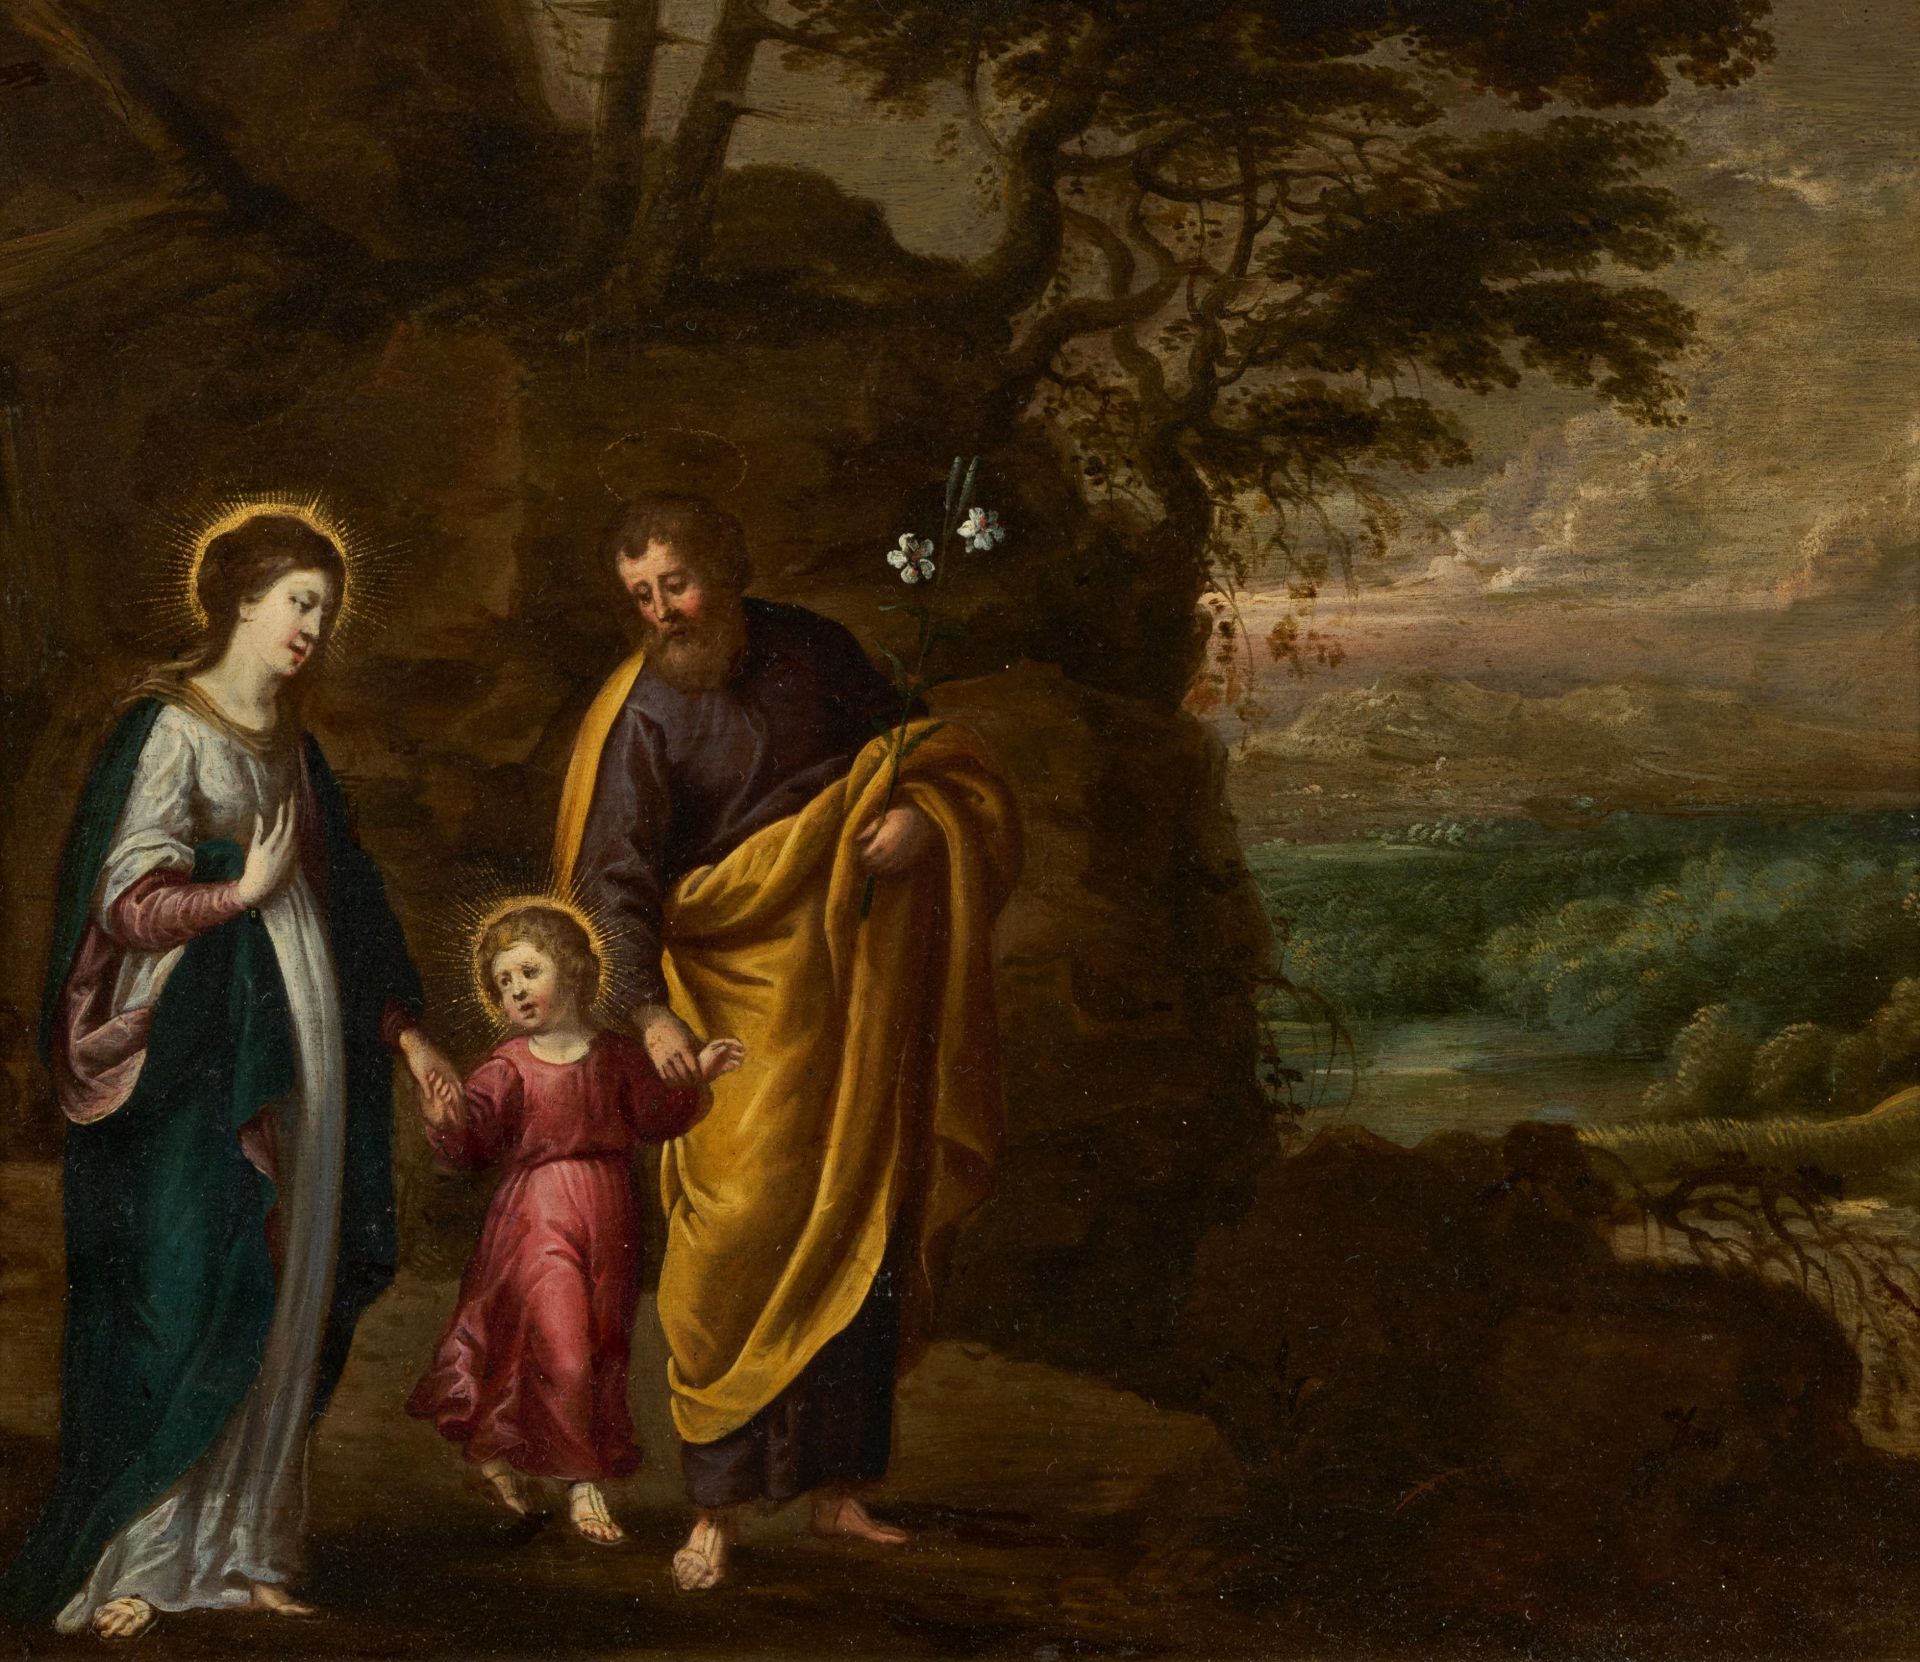 Hendrick van Balen and Lucas van Uden - attributed: Holy Family